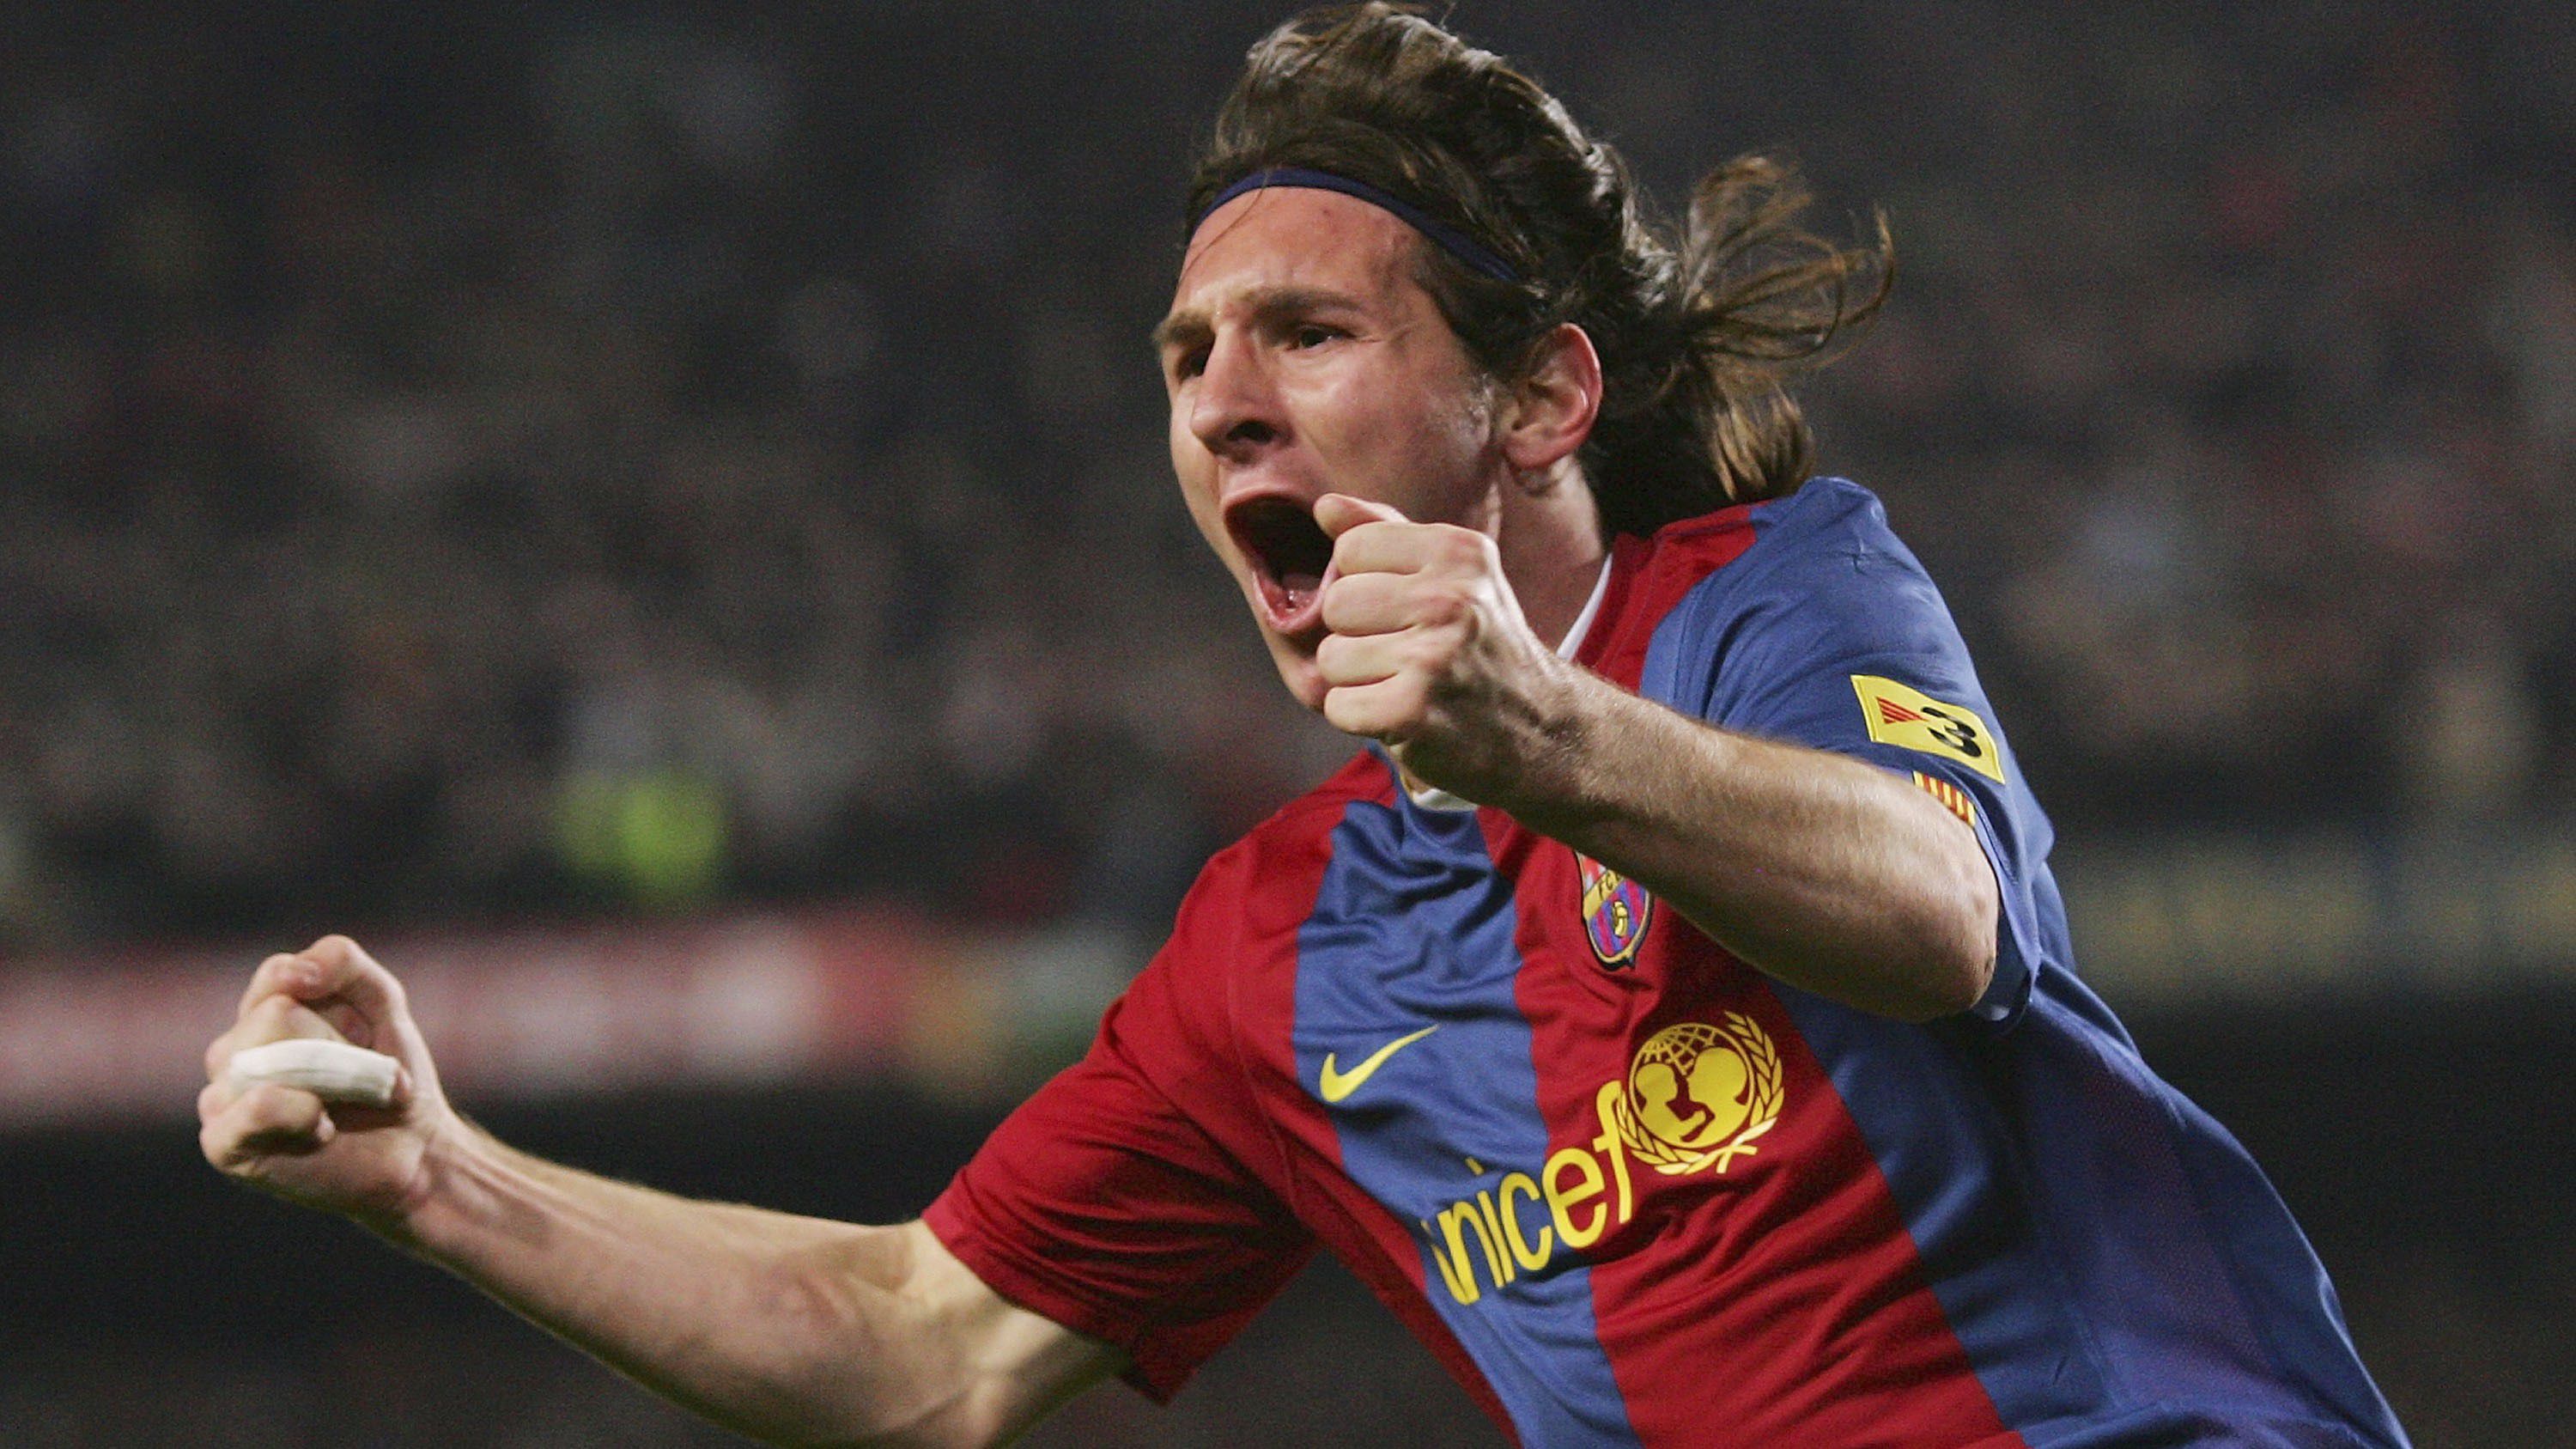 Videó: 16 évvel ezelőtt triplázott az ifjú Messi a Real Madrid ellen